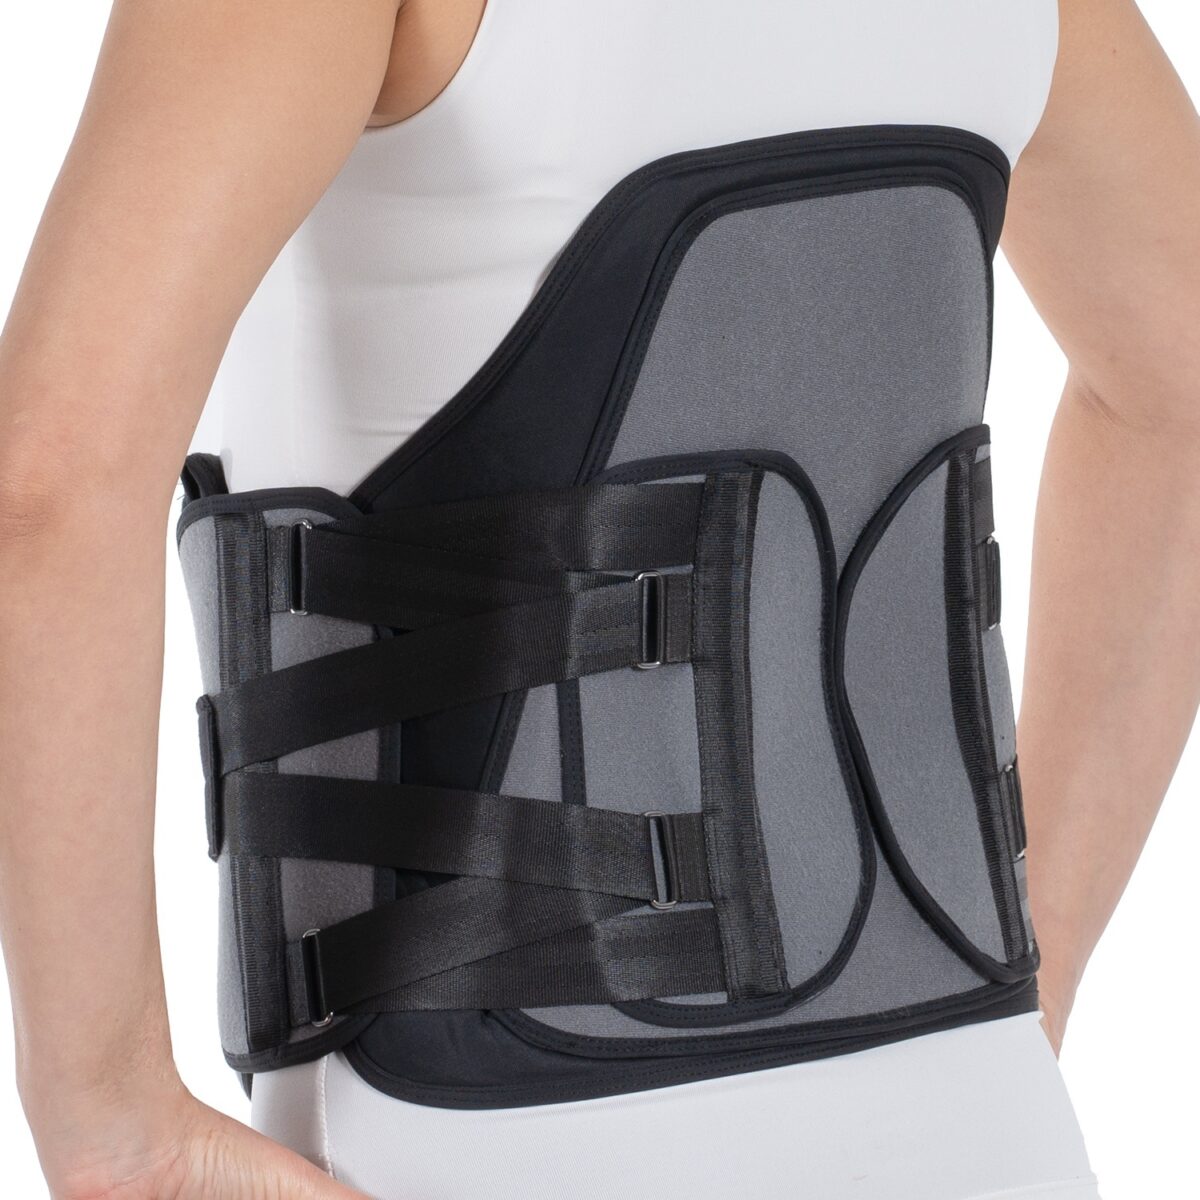 wingmed orthopedic equipments W424 lso corset 14